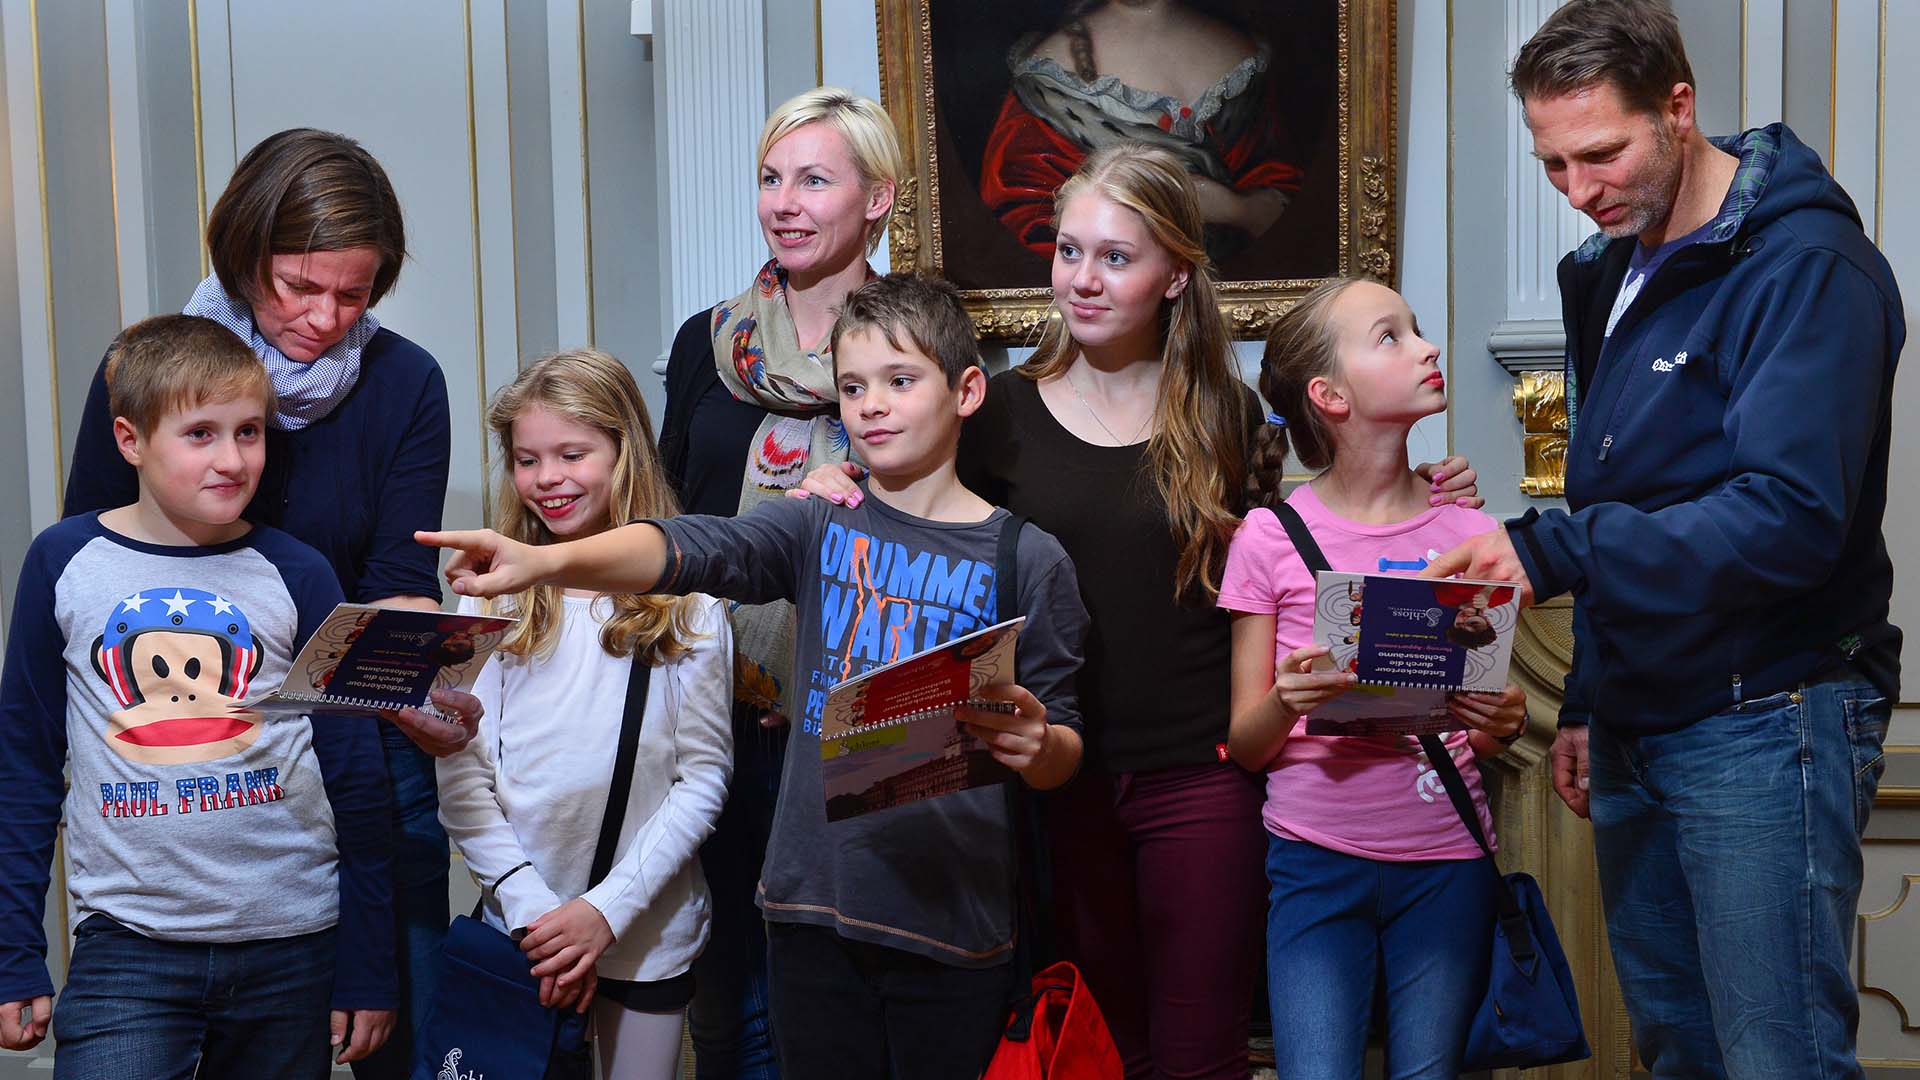 Das Foto zeigt Eltern mit ihren Kindern im Museum. Drei Erwachsene und fünf Kinder stehen in einem historischen Raum und schauen sich um. Drei der Kinder halten Hefte in den Händen. Ein Junge, mittig im Bild, zeigt auf etwas.